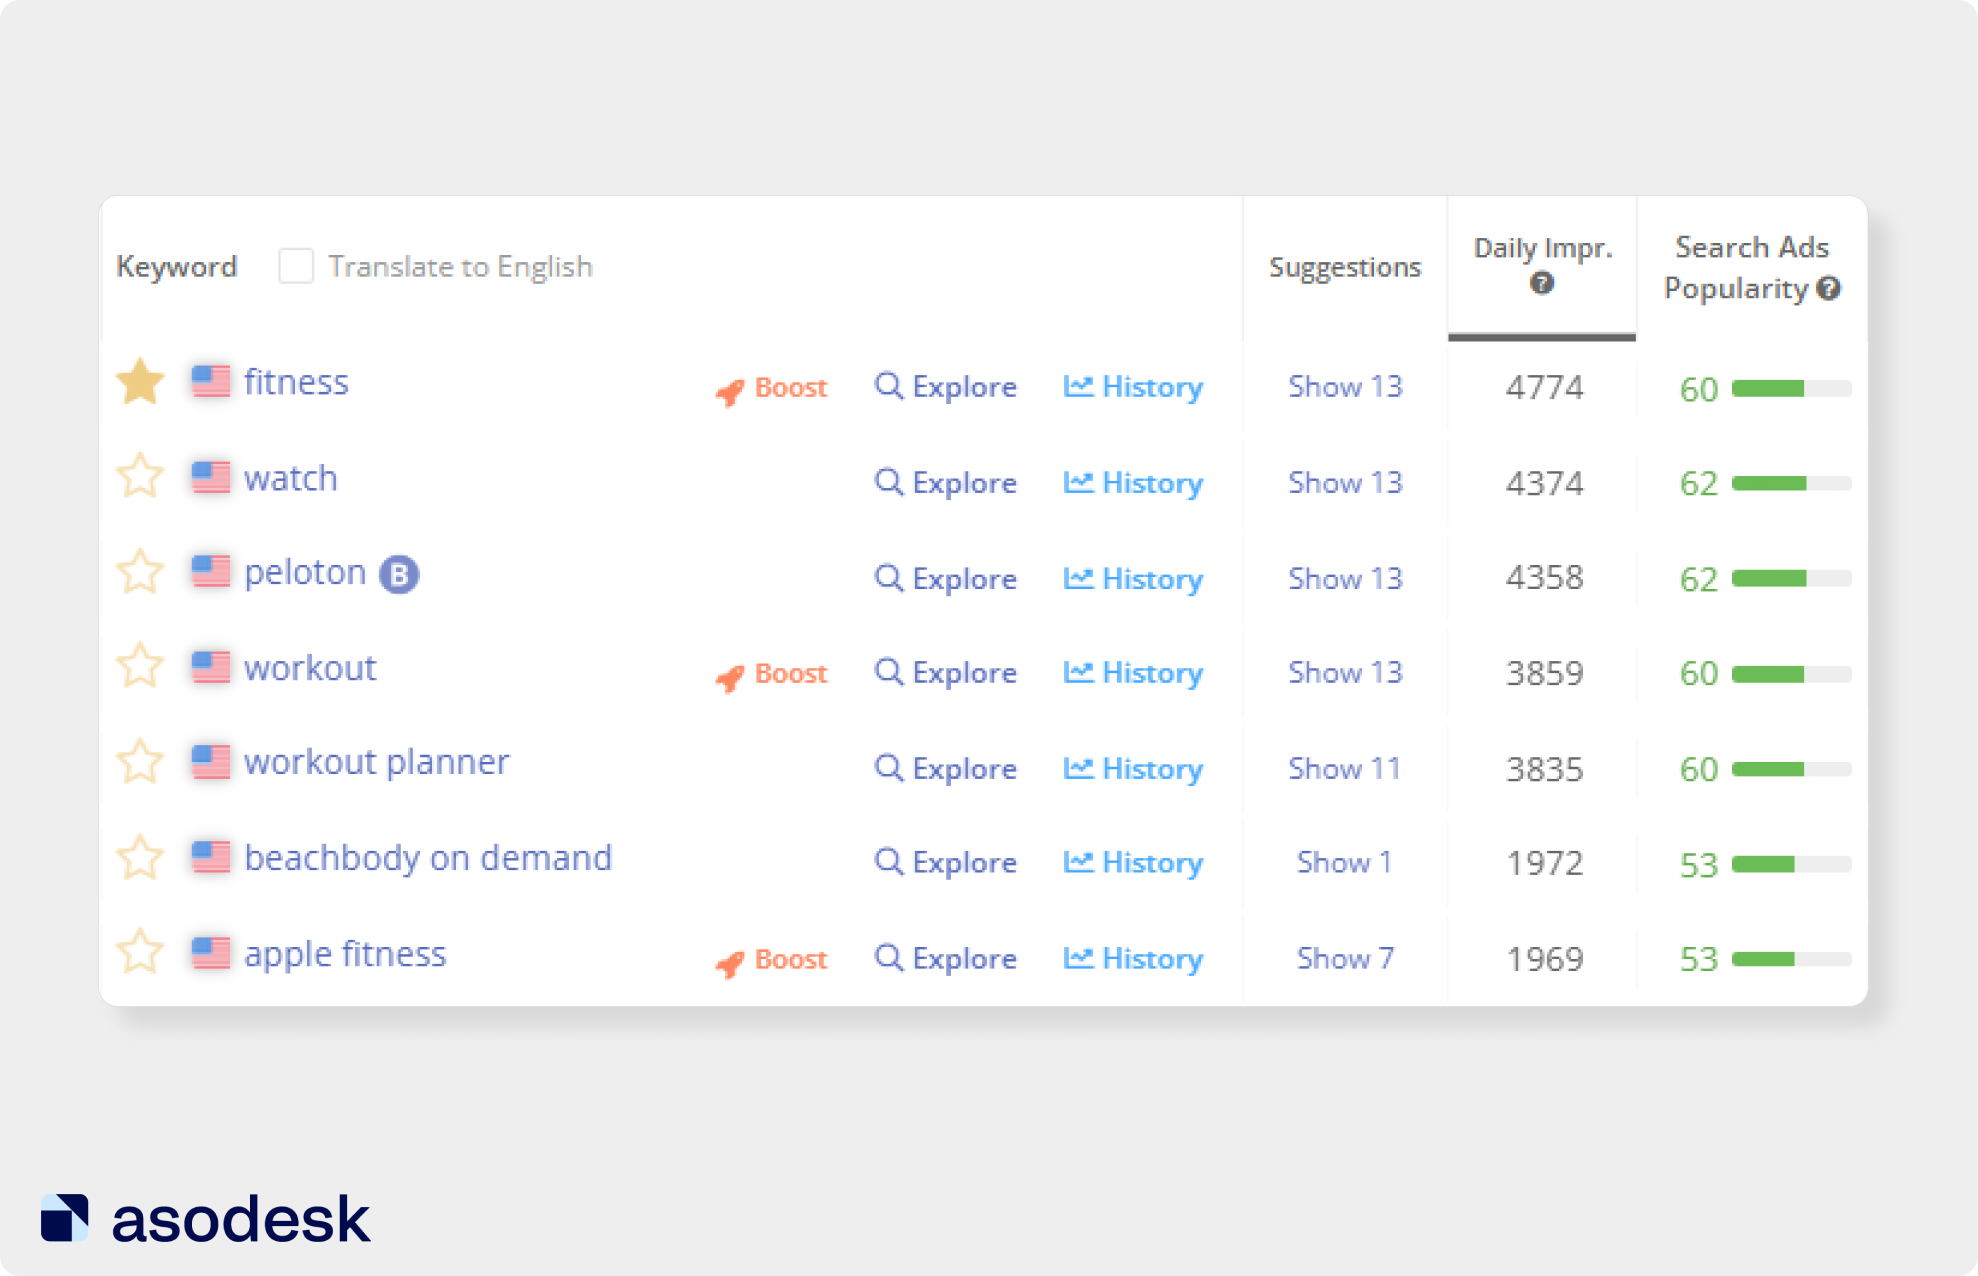 Показатели Daily Impressions и Search Ads Popularity в Asodesk позволяют отслеживать популярность поисковых запросов